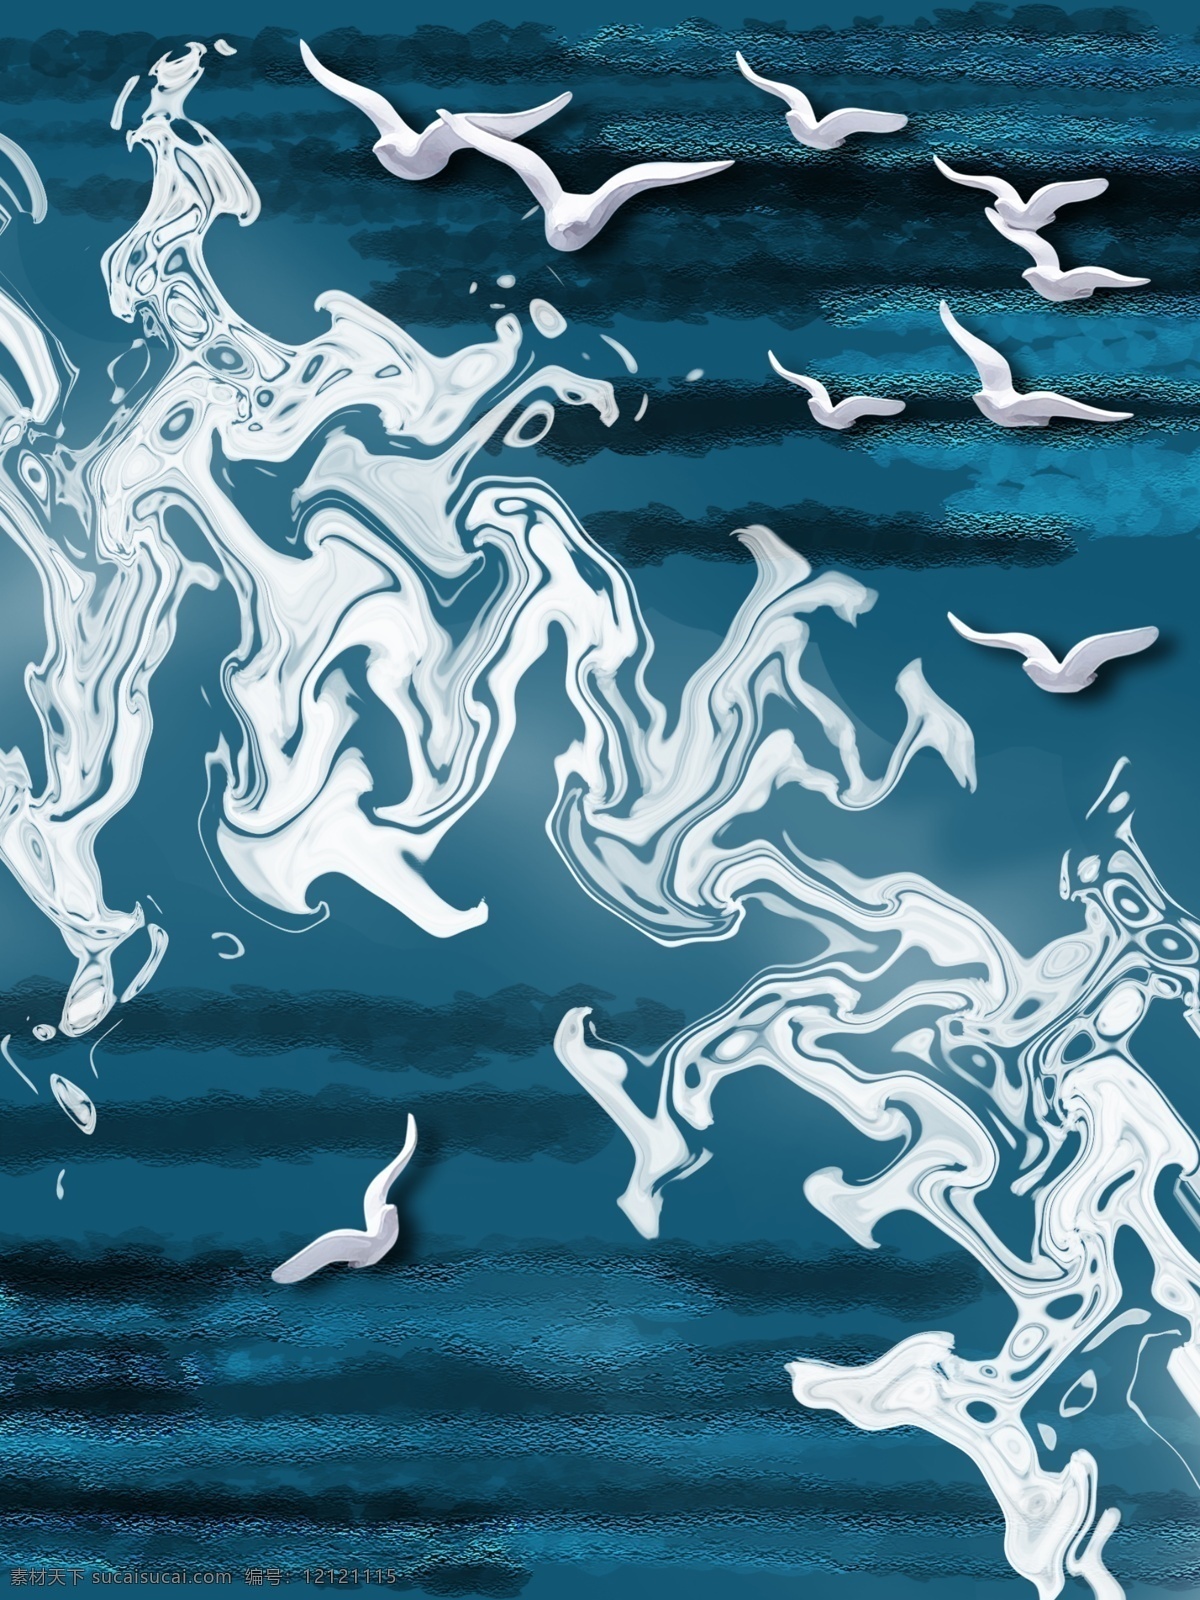 现代 深沉 蓝色 海洋 客厅 装饰画 立体海鸥 客厅装饰画 一联画 白色海浪 抽象海洋